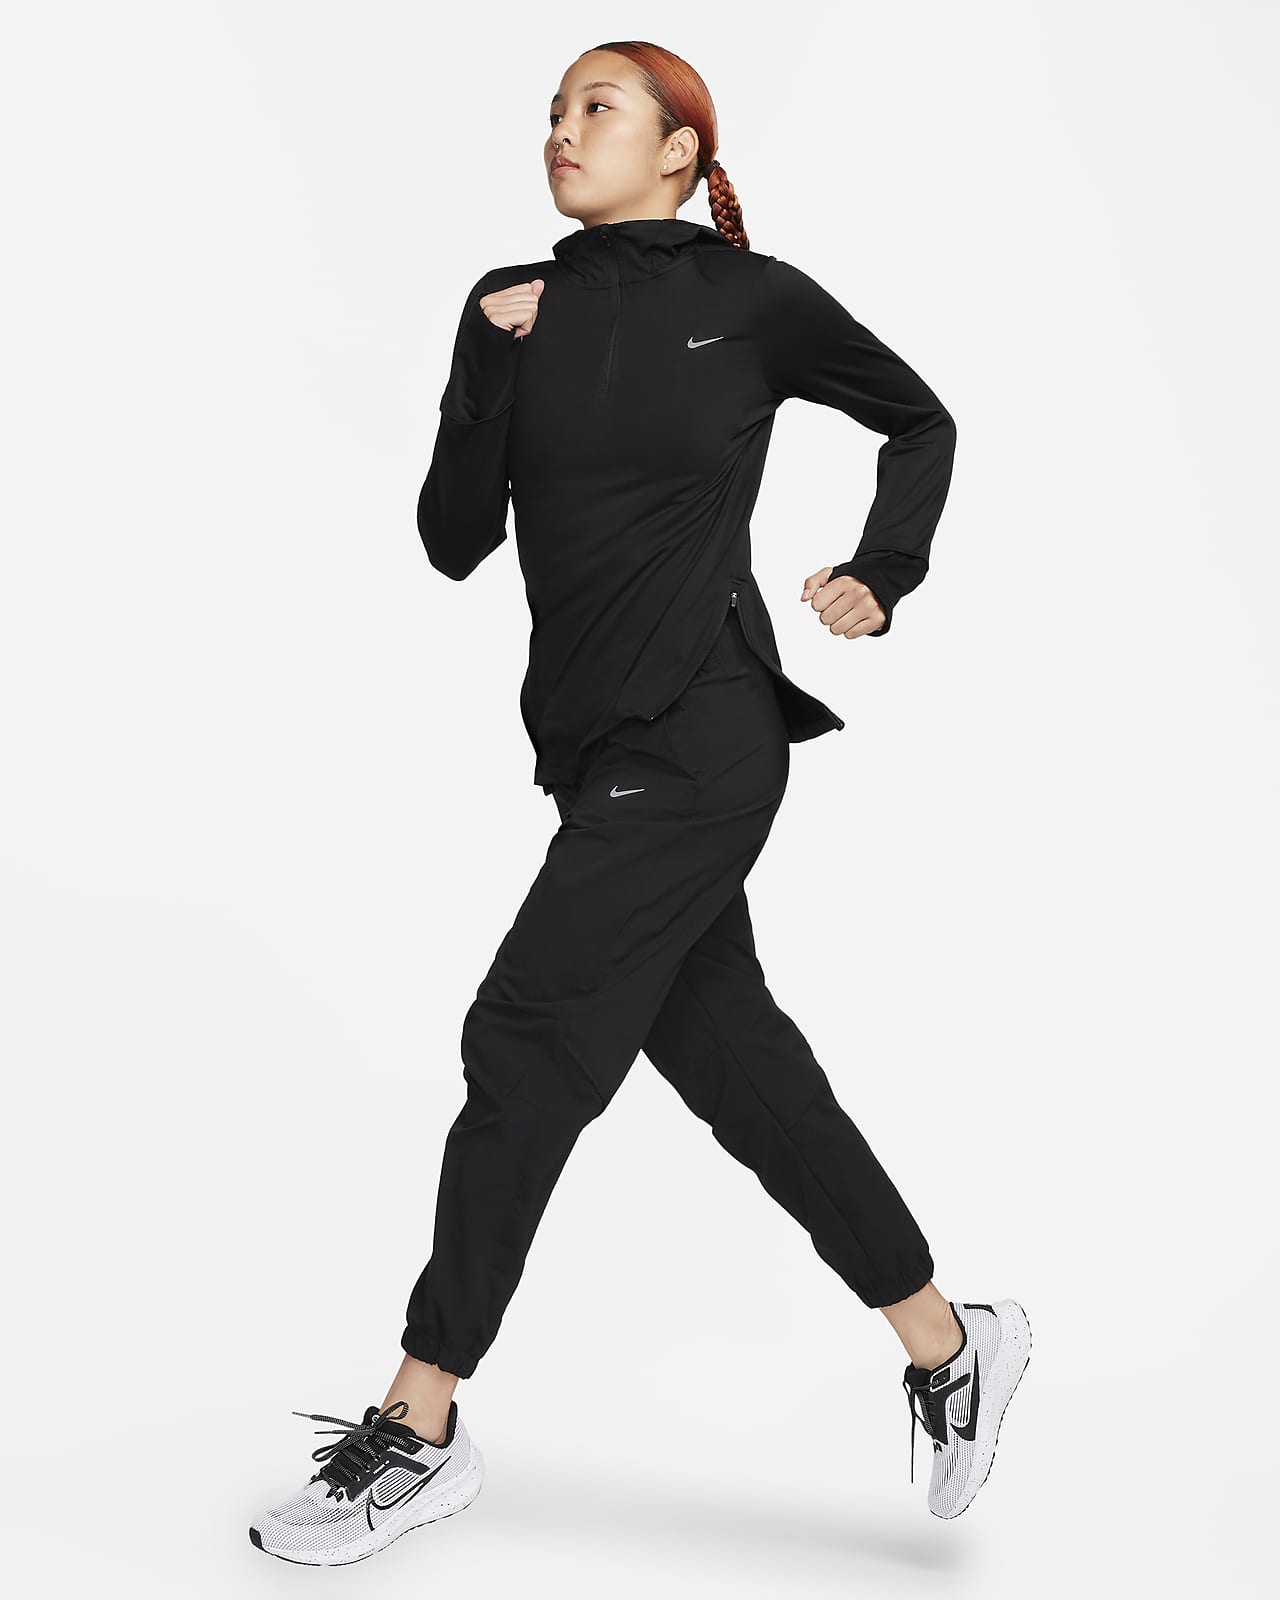 Nike Miler Men's Repel Running Jacket. Nike.com